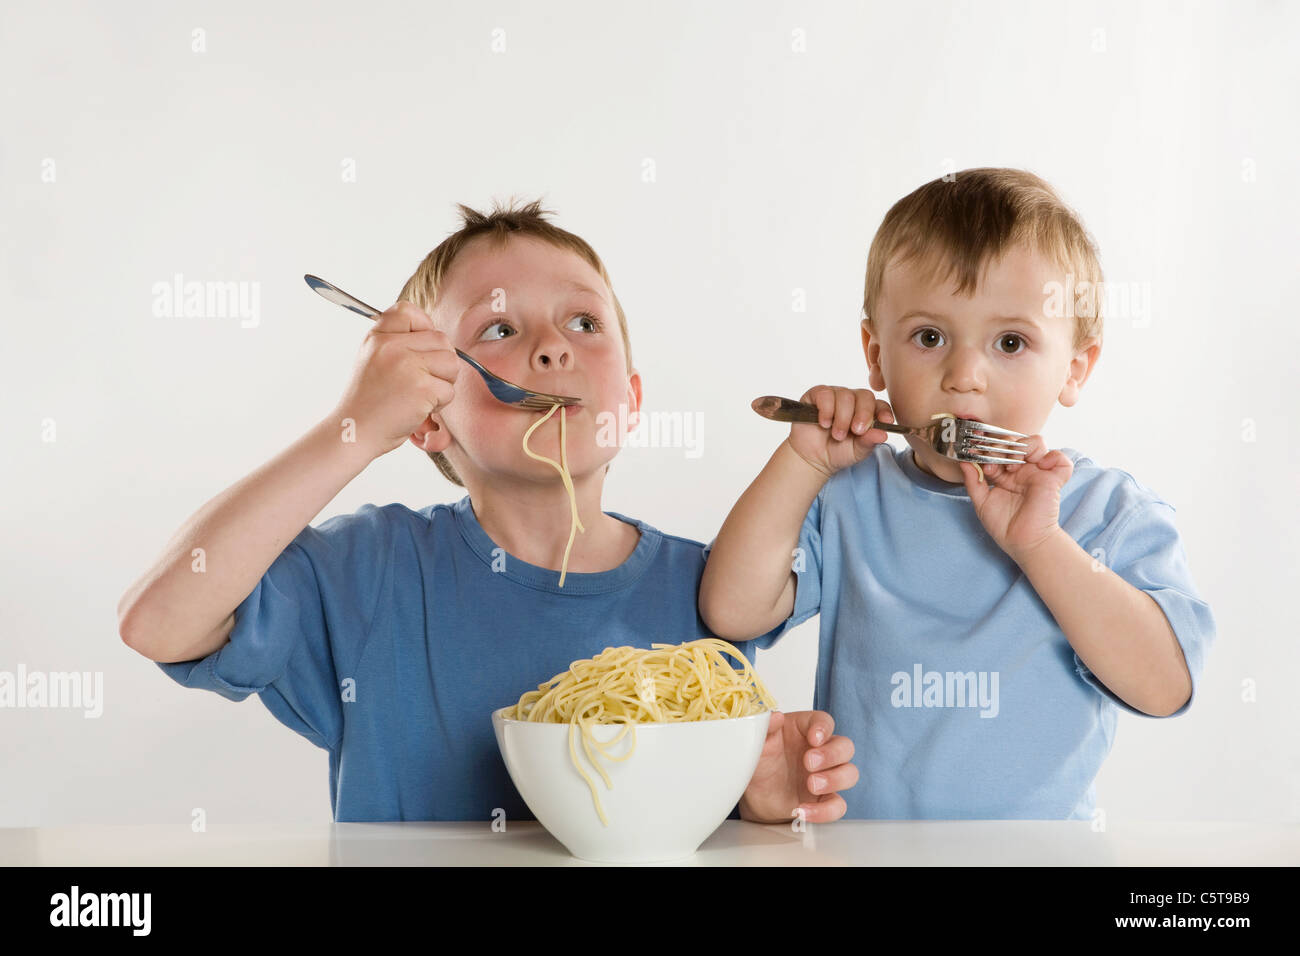 Deux garçons (6-7) (2-3) eating spaghetti, portrait Banque D'Images